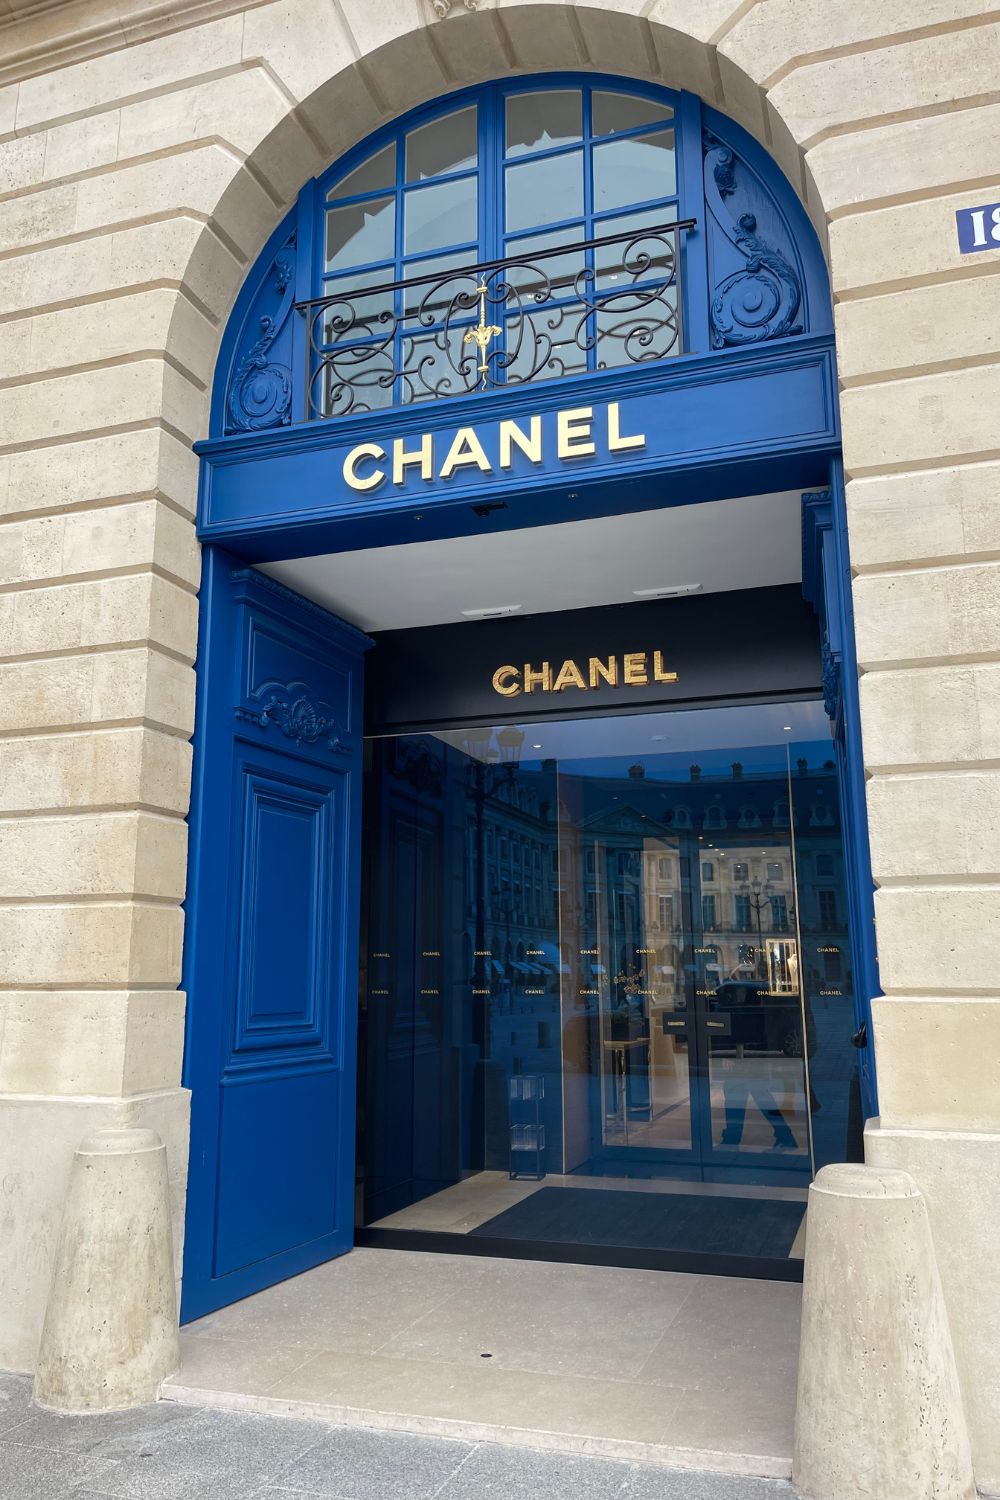 Luxury Department: Chanel, Fendi, Louis Vuitton & More